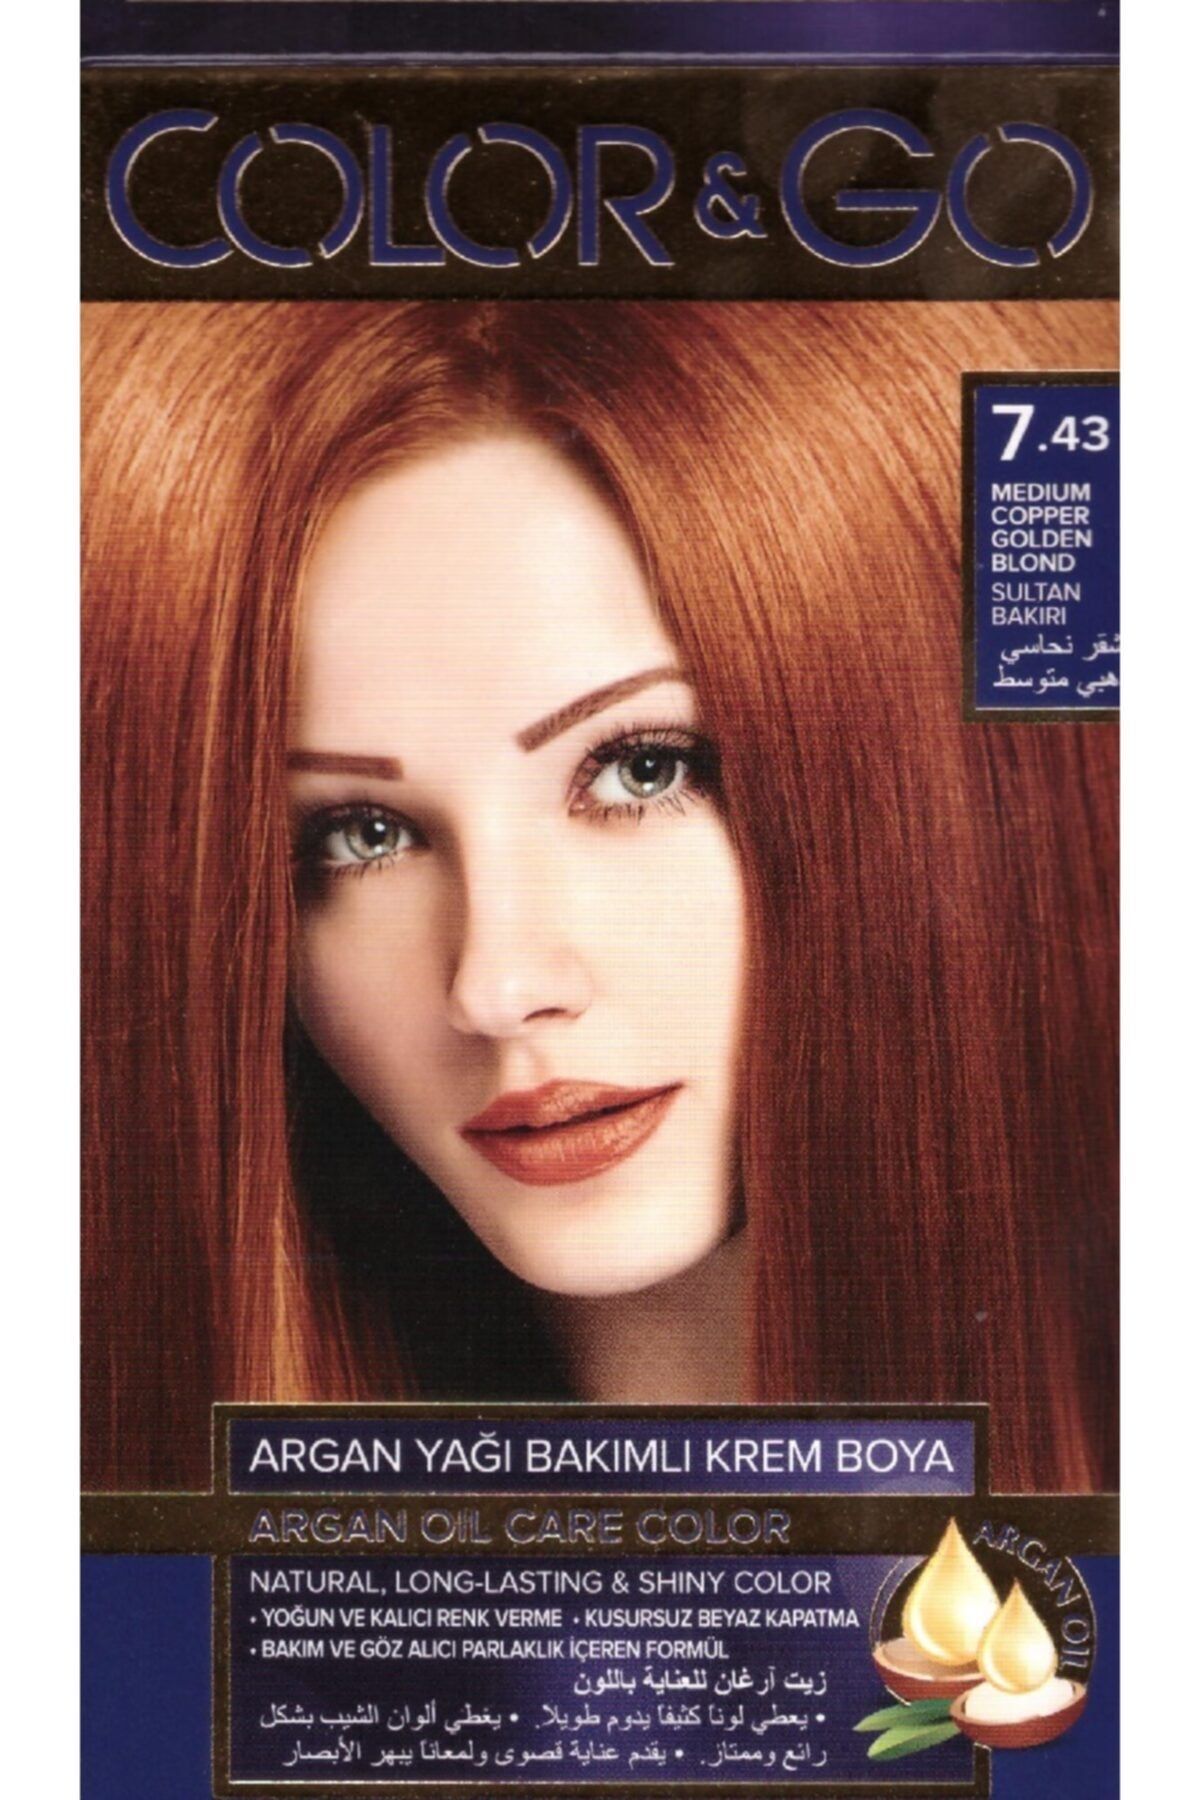 COLOR&GO Color & Go Saç Boyası Sultan Bakırı 7.43